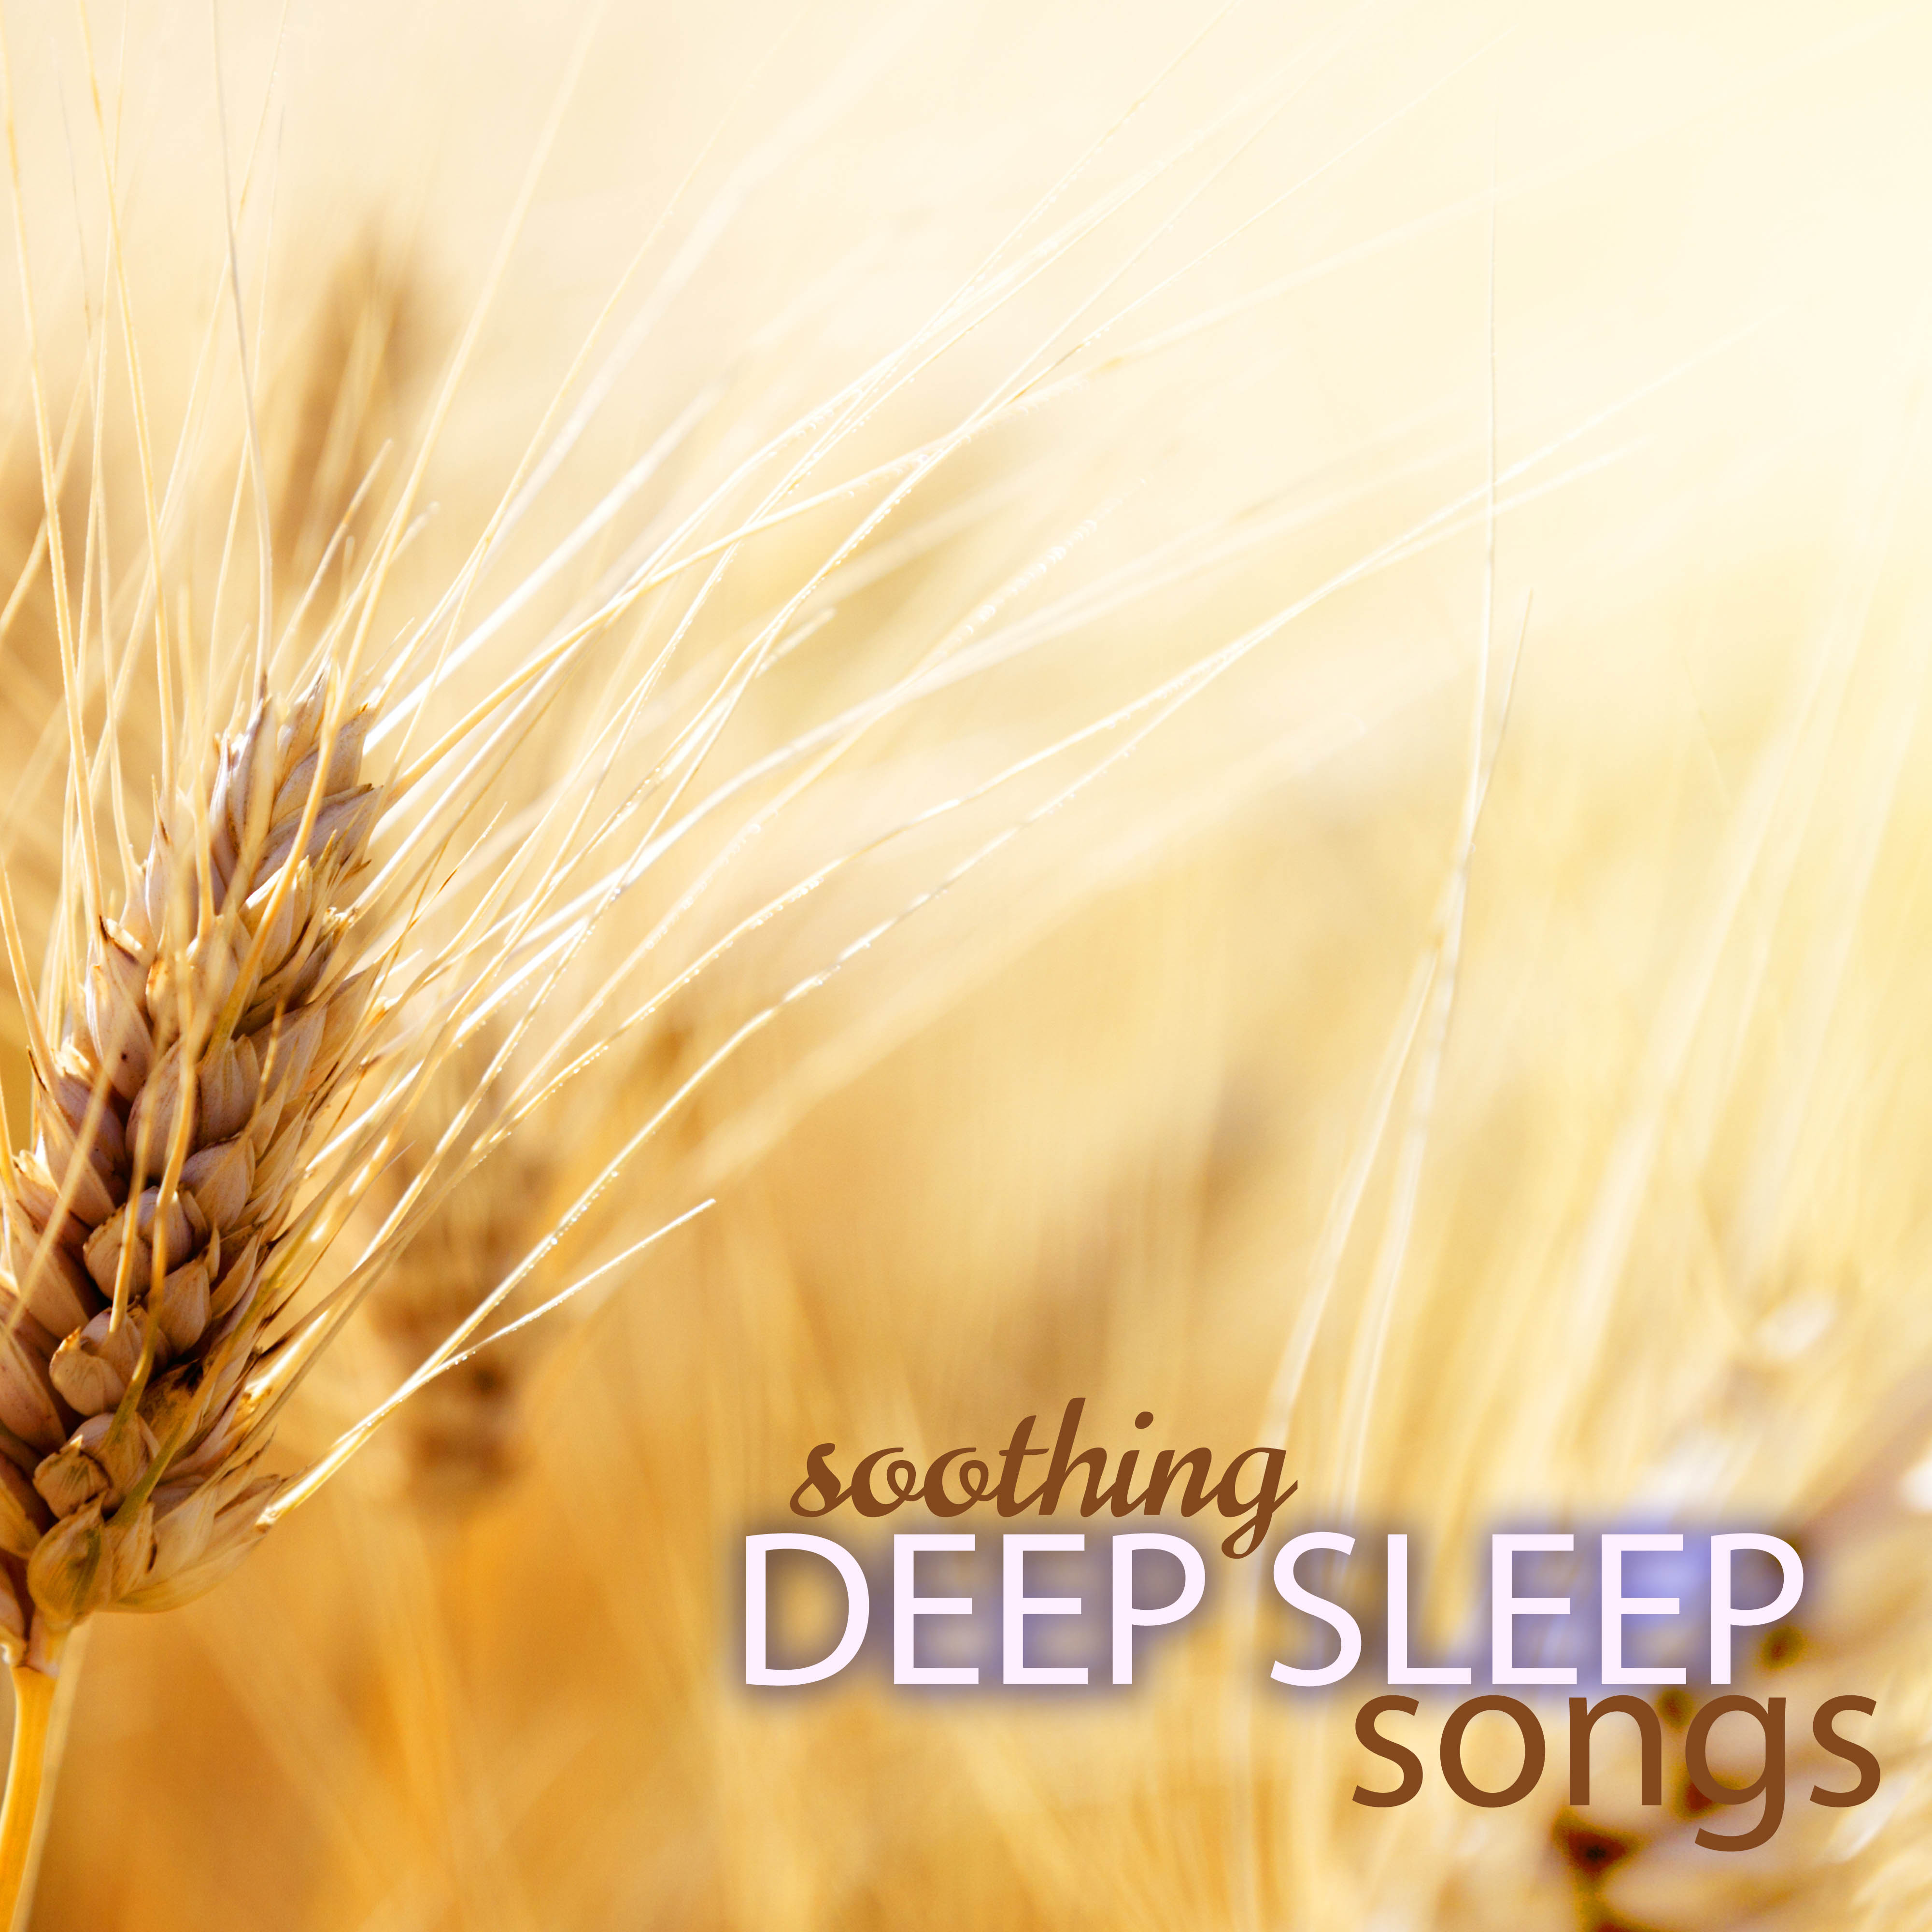 Soothing Deep Sleep Songs to Regulate Sleeping Pattern